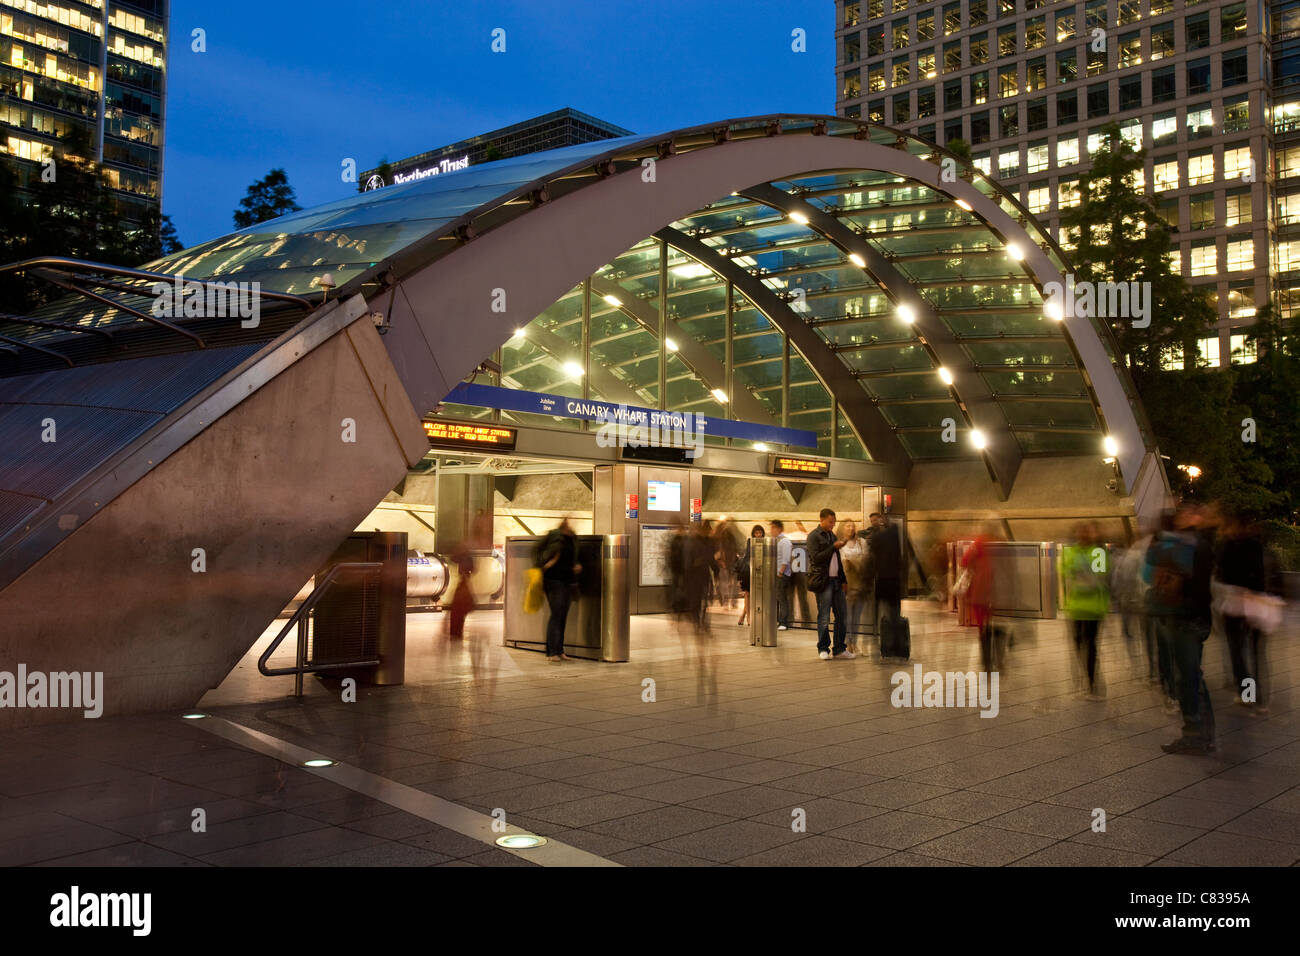 La station de métro Canary Wharf, Londres, Angleterre Banque D'Images